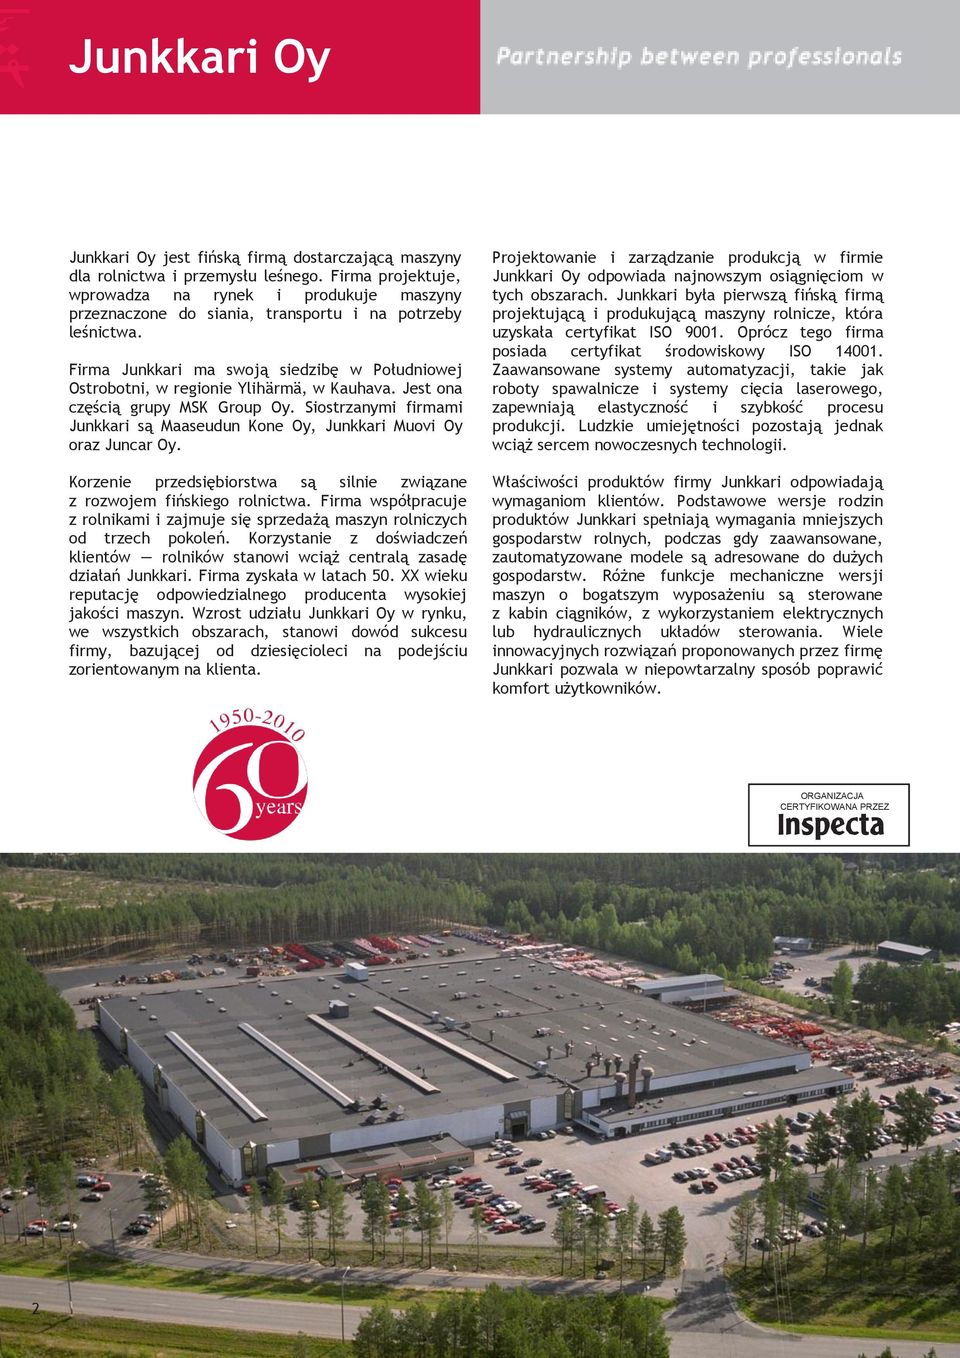 Firma Junkkari ma swoją siedzibę w Południowej Ostrobotni, w regionie Ylihärmä, w Kauhava. Jest ona częścią grupy MSK Group Oy.